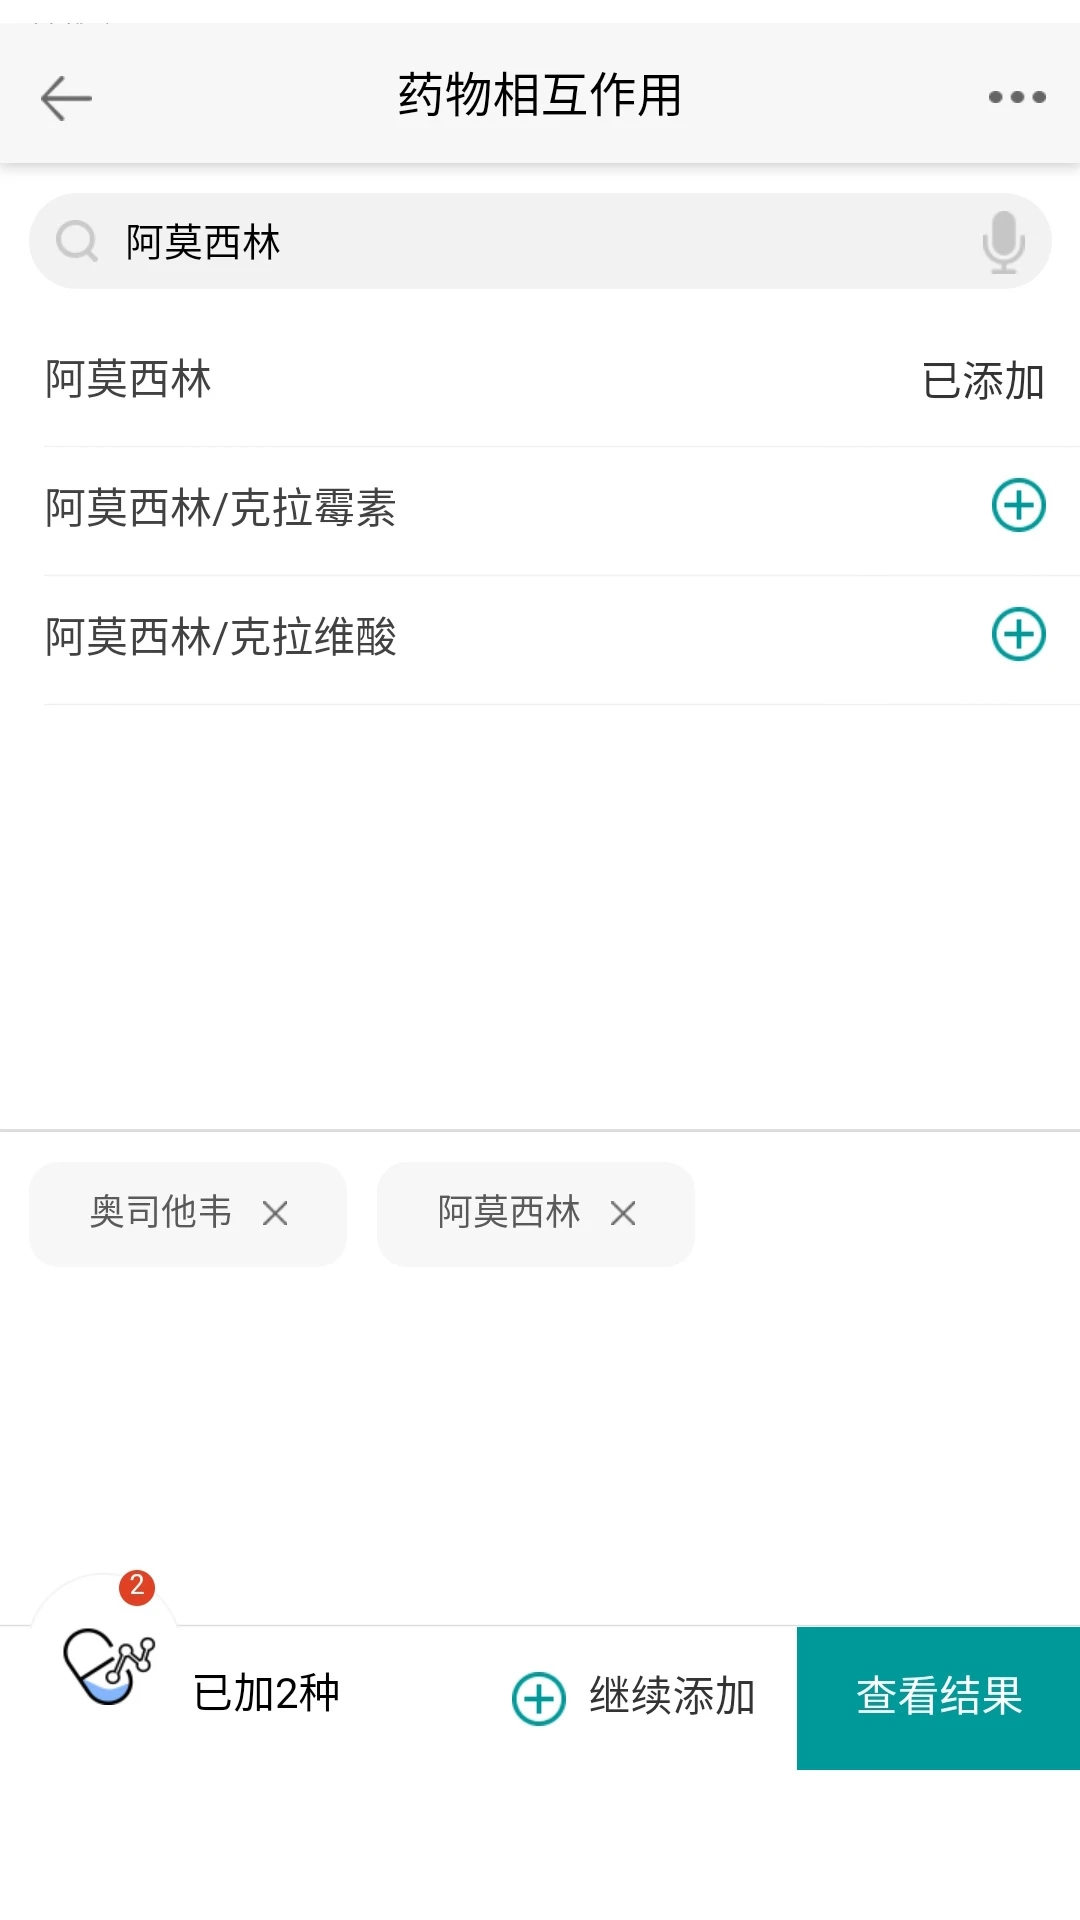 人卫用药助手丽江app开发外包